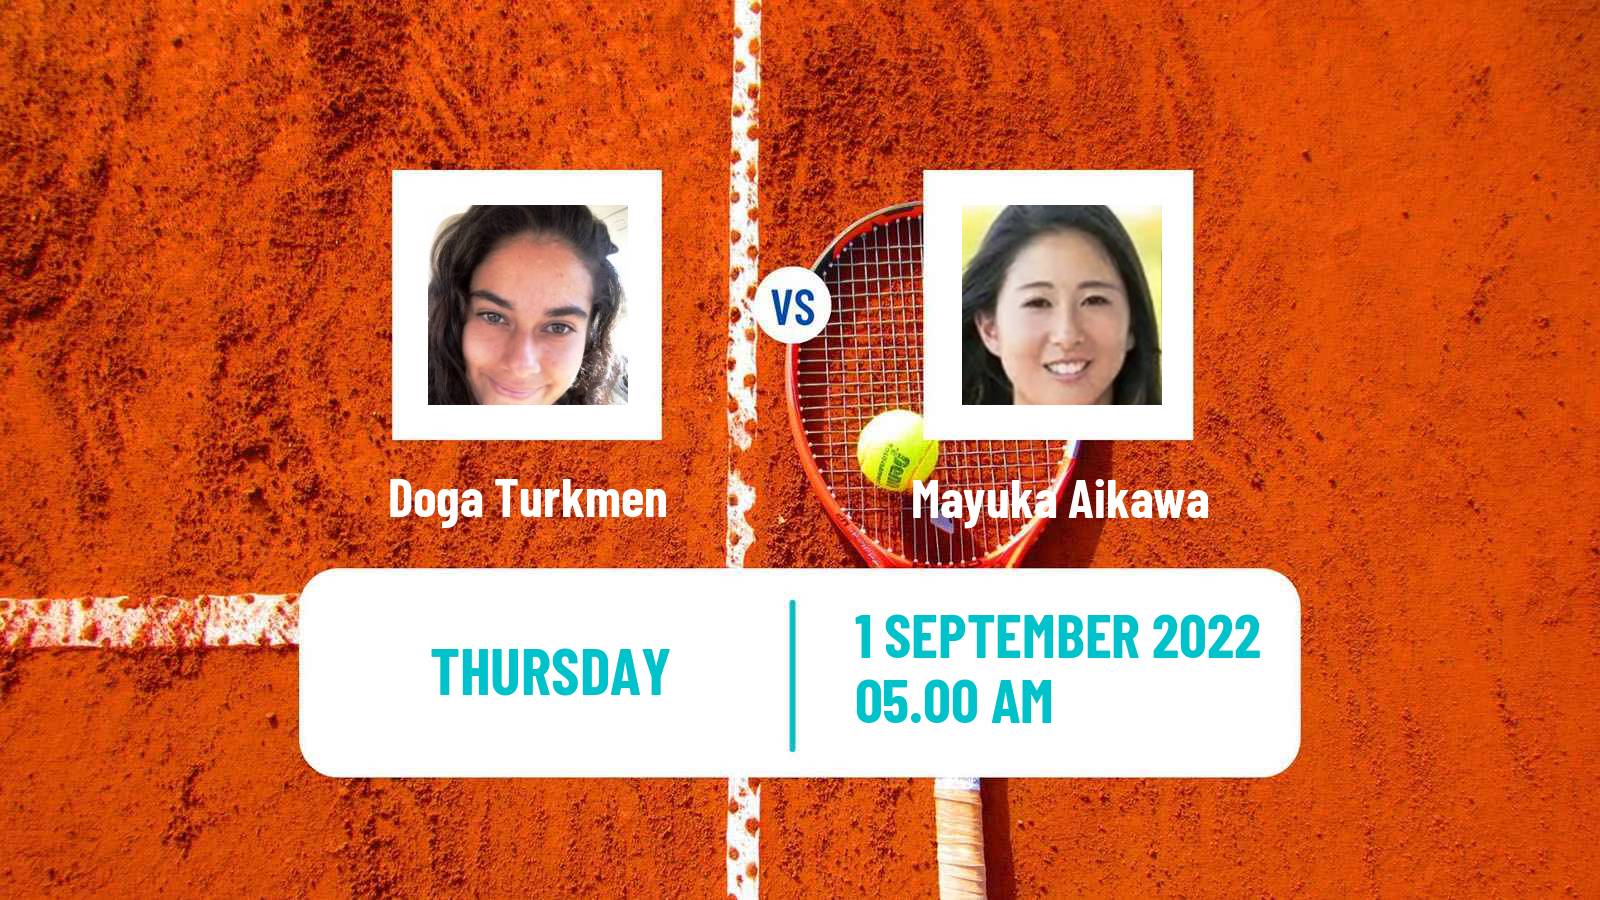 Tennis ITF Tournaments Doga Turkmen - Mayuka Aikawa